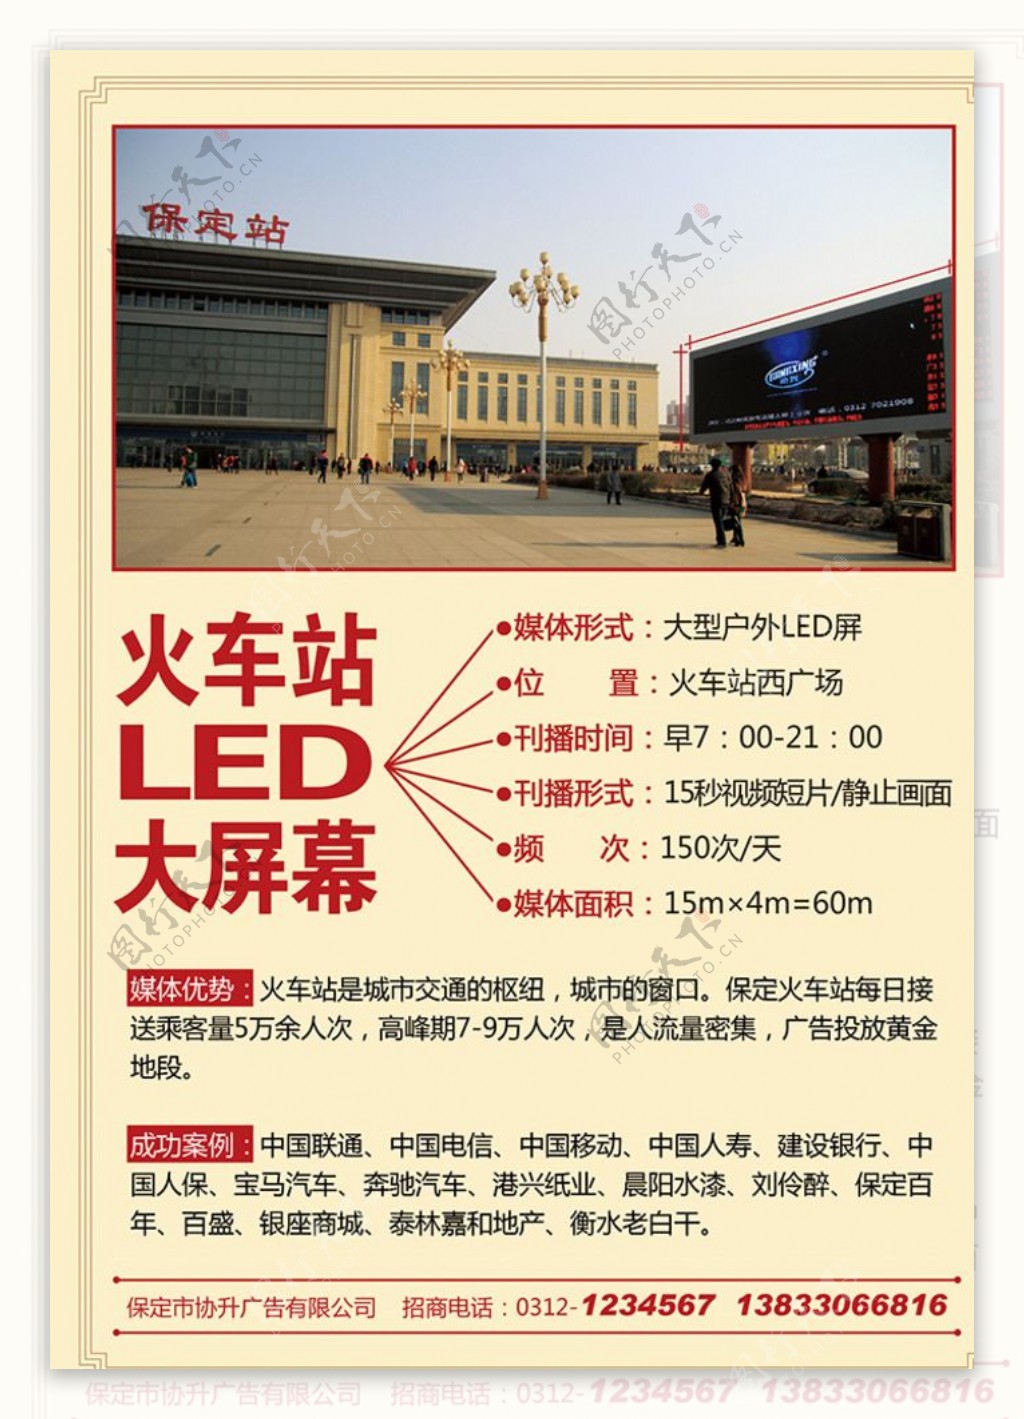 火车站LED大屏幕招商广告单页图片